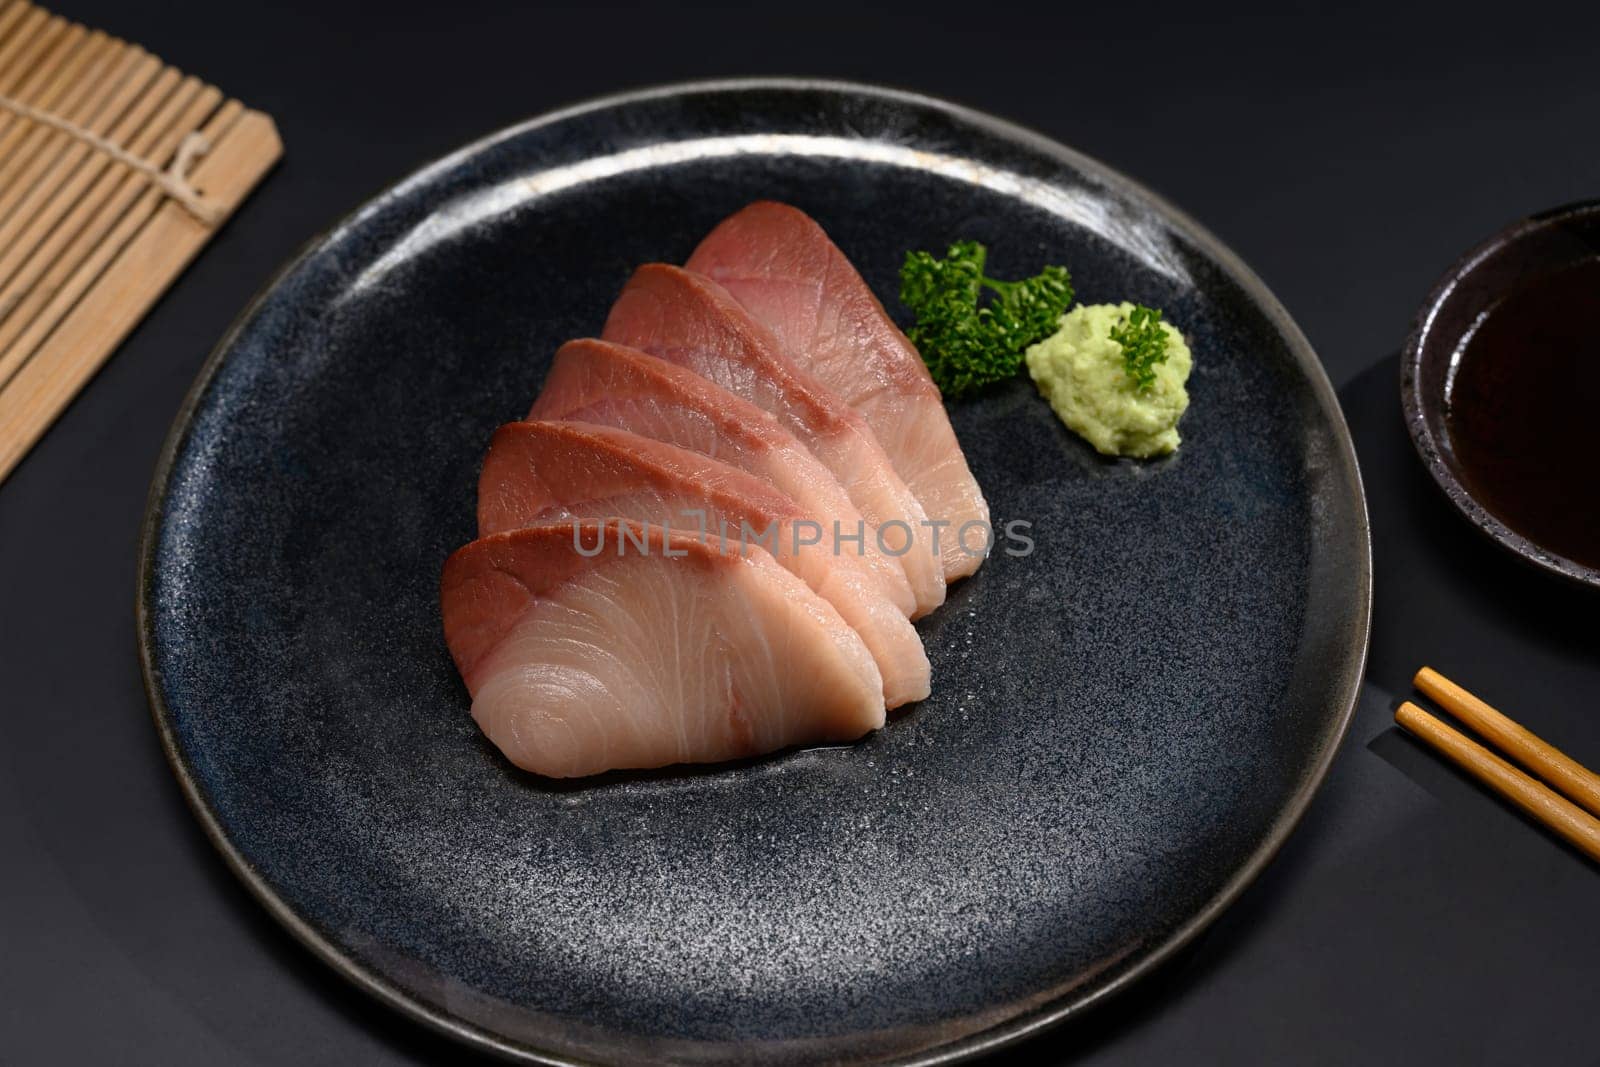 Fresh Hamachi sashimi on black plate with parsley leaf. Japanese food style by prathanchorruangsak